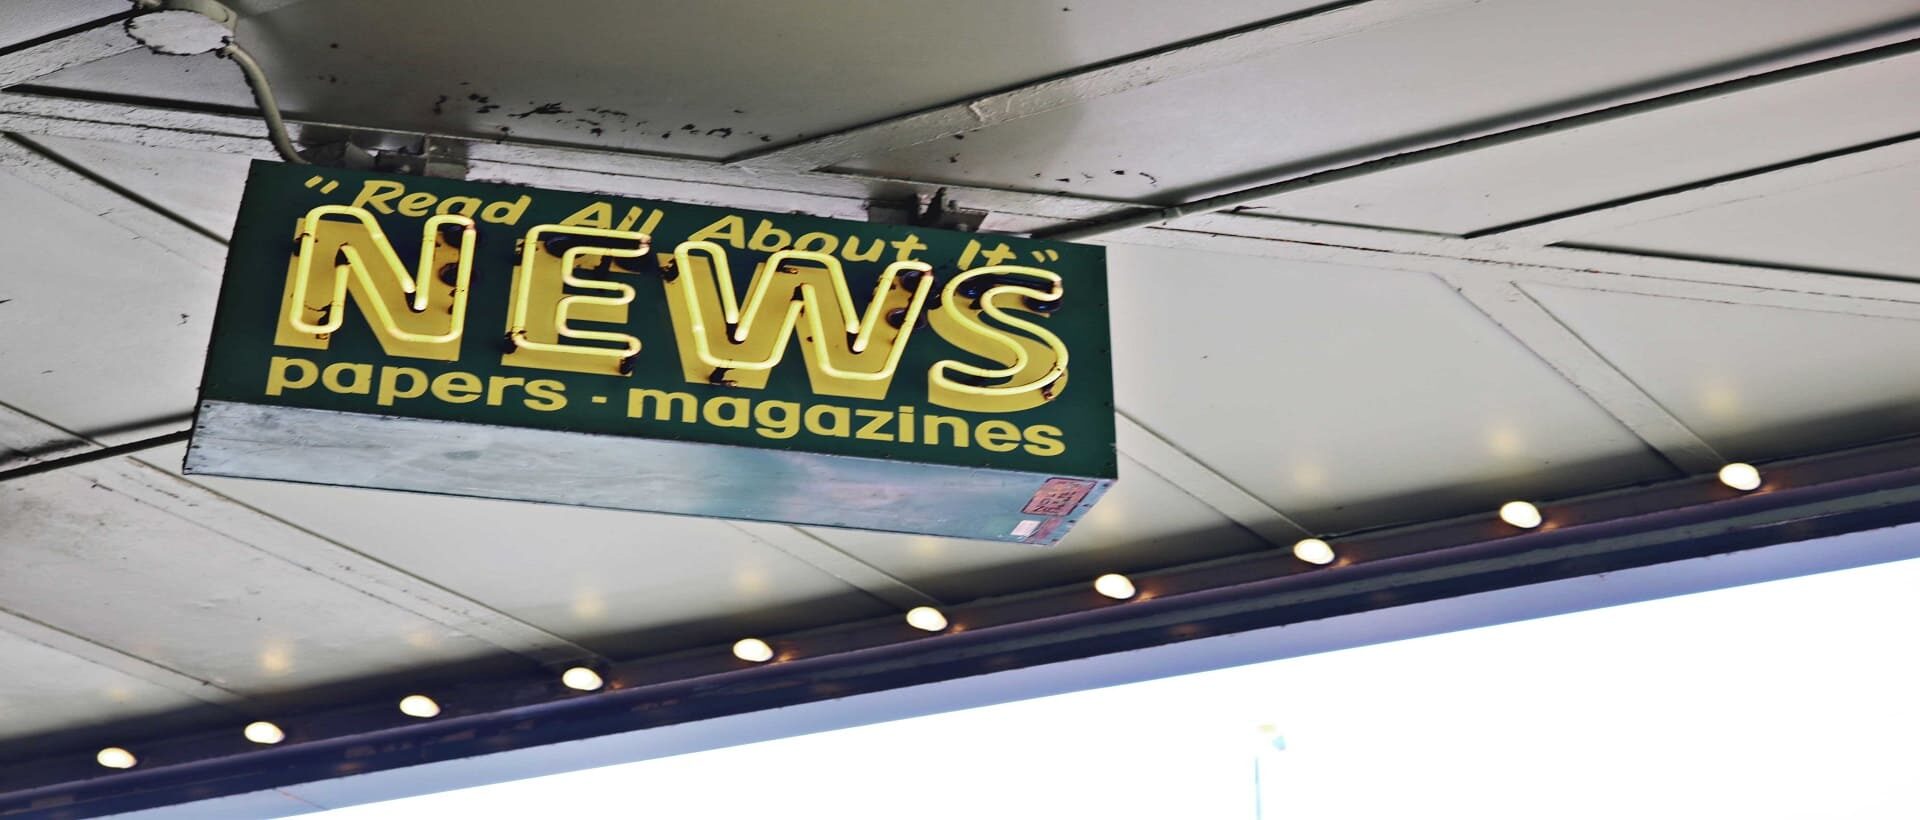 Von der Decke hängendes Schild mit gelber Aufschrift "read all about it" NEWS